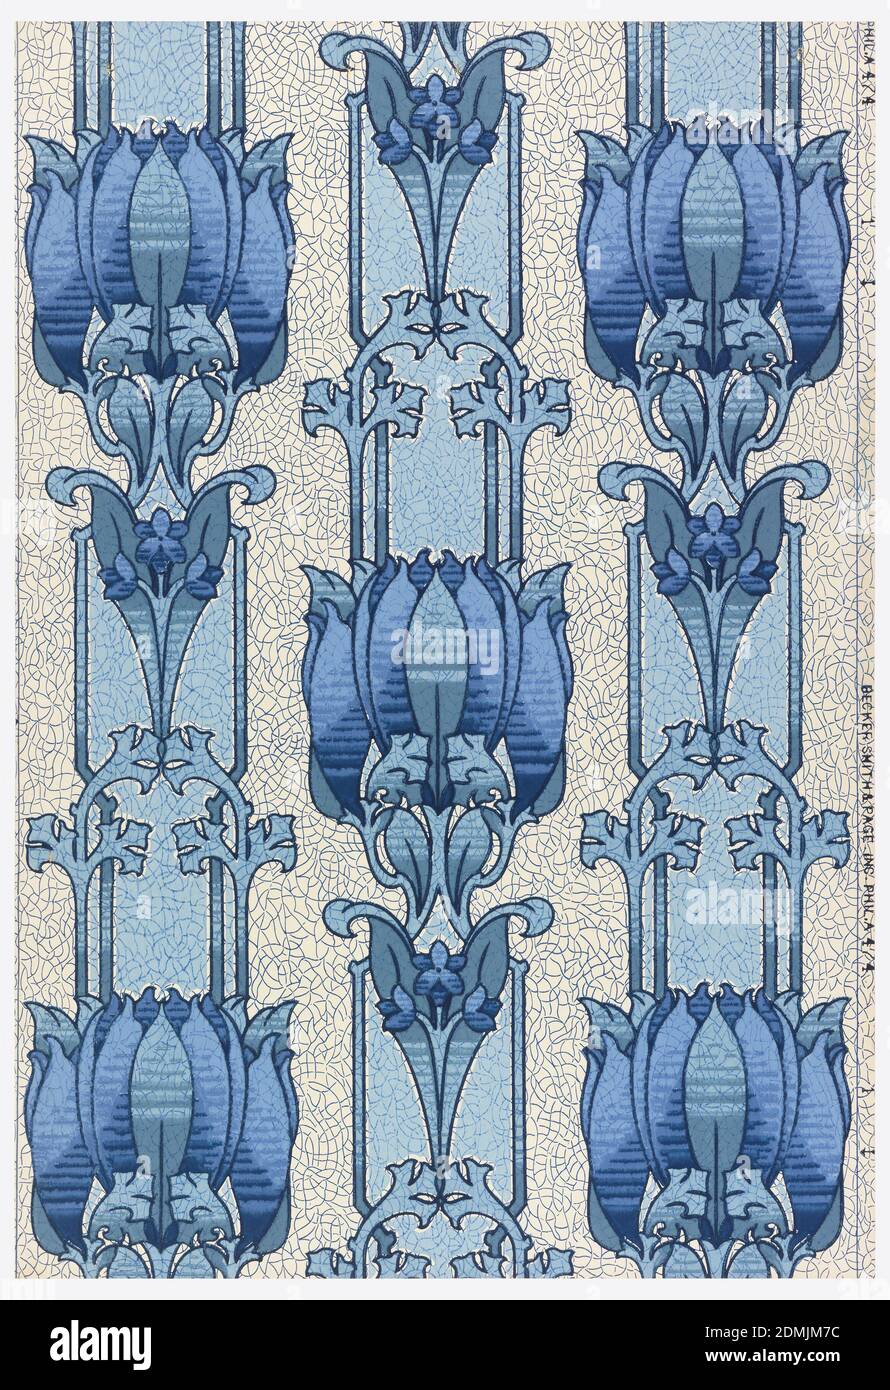 Flanc - échantillon, imprimé à la machine, bande florale bleue stylisée, imprimé dans des tons de bleu sur un sol bleu marbré., États-Unis, 1906–08, revêtements muraux, flanc - échantillon Banque D'Images